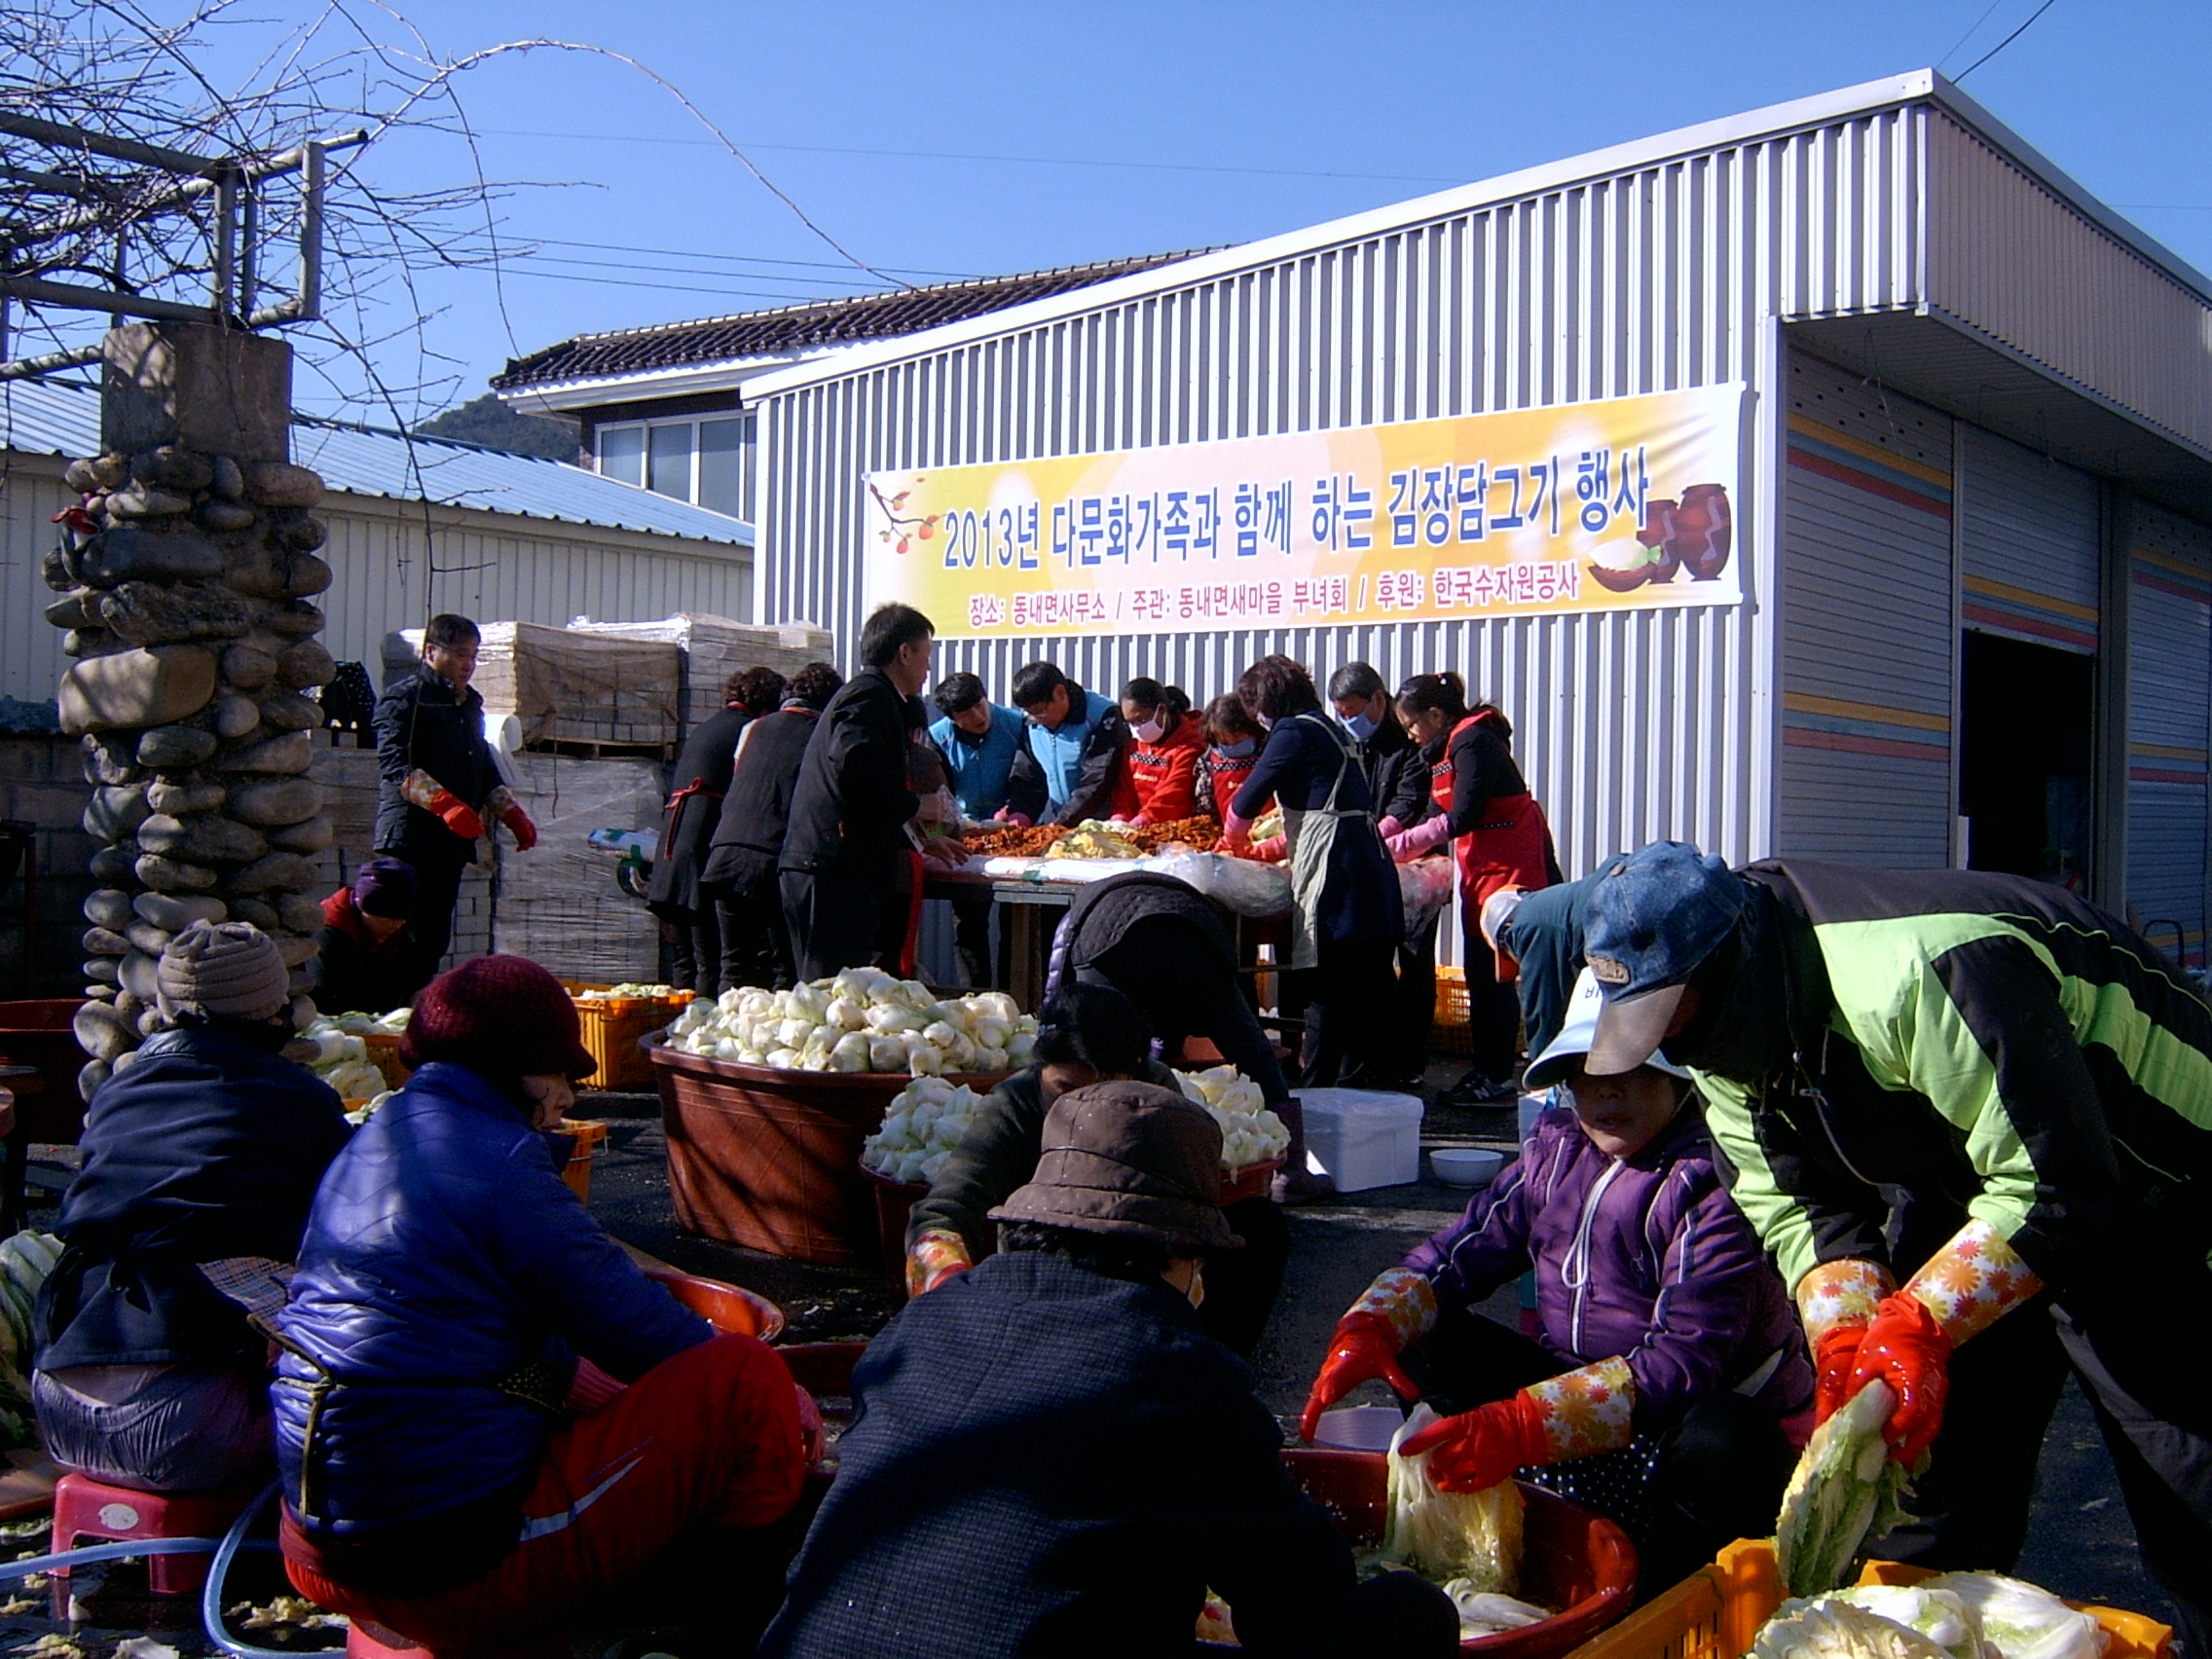 2013년 다문화가족과 함께 하는 김장담그기 행사